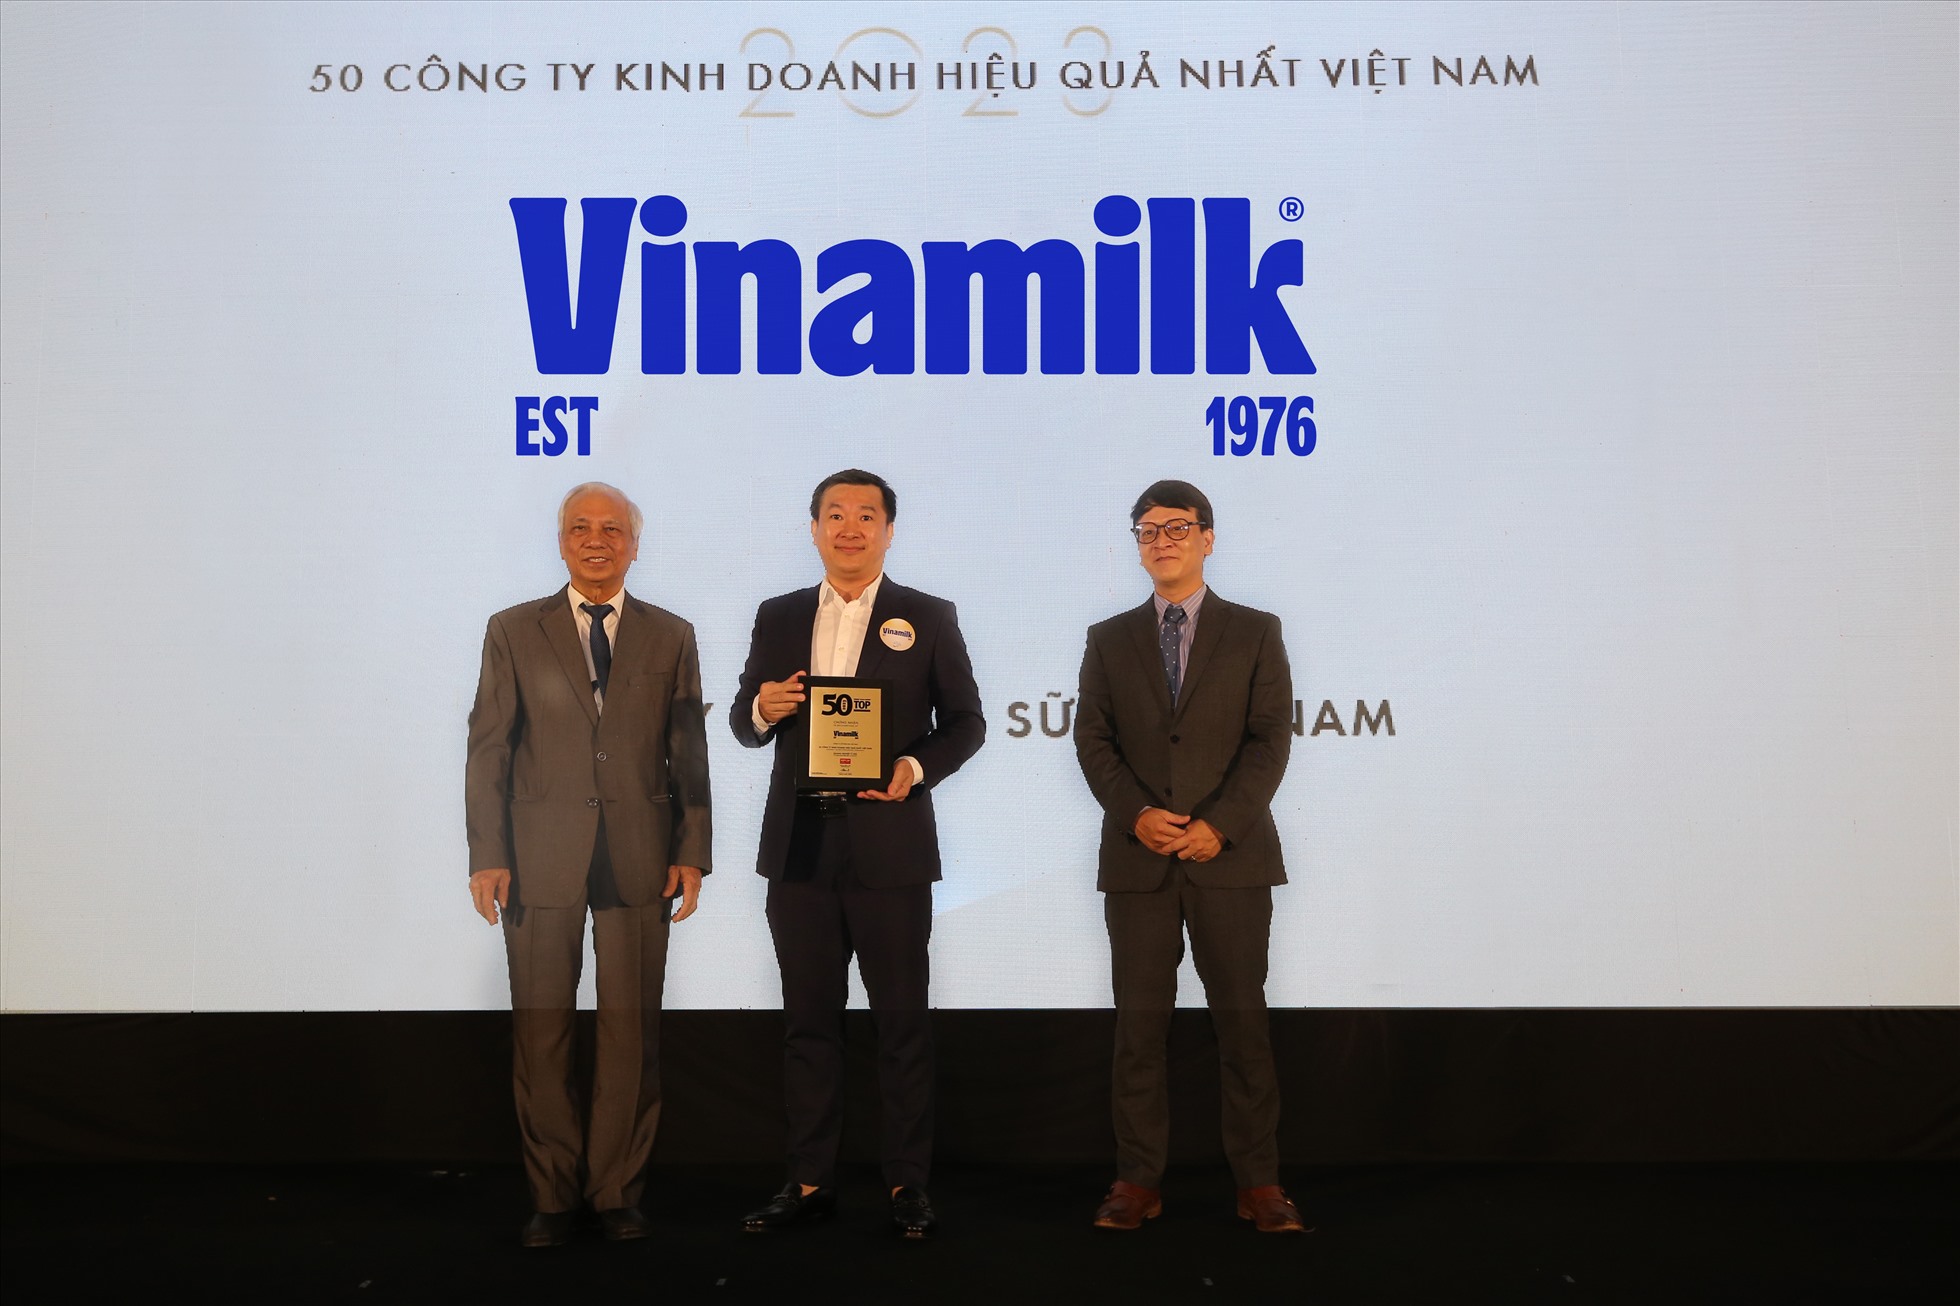 Ông Đỗ Thanh Tuấn - Giám đốc Đối ngoại Vinamilk - nhận danh hiệu Top 50 Công ty kinh doanh hiệu quả nhất Việt Nam. Ảnh: Vinamilk